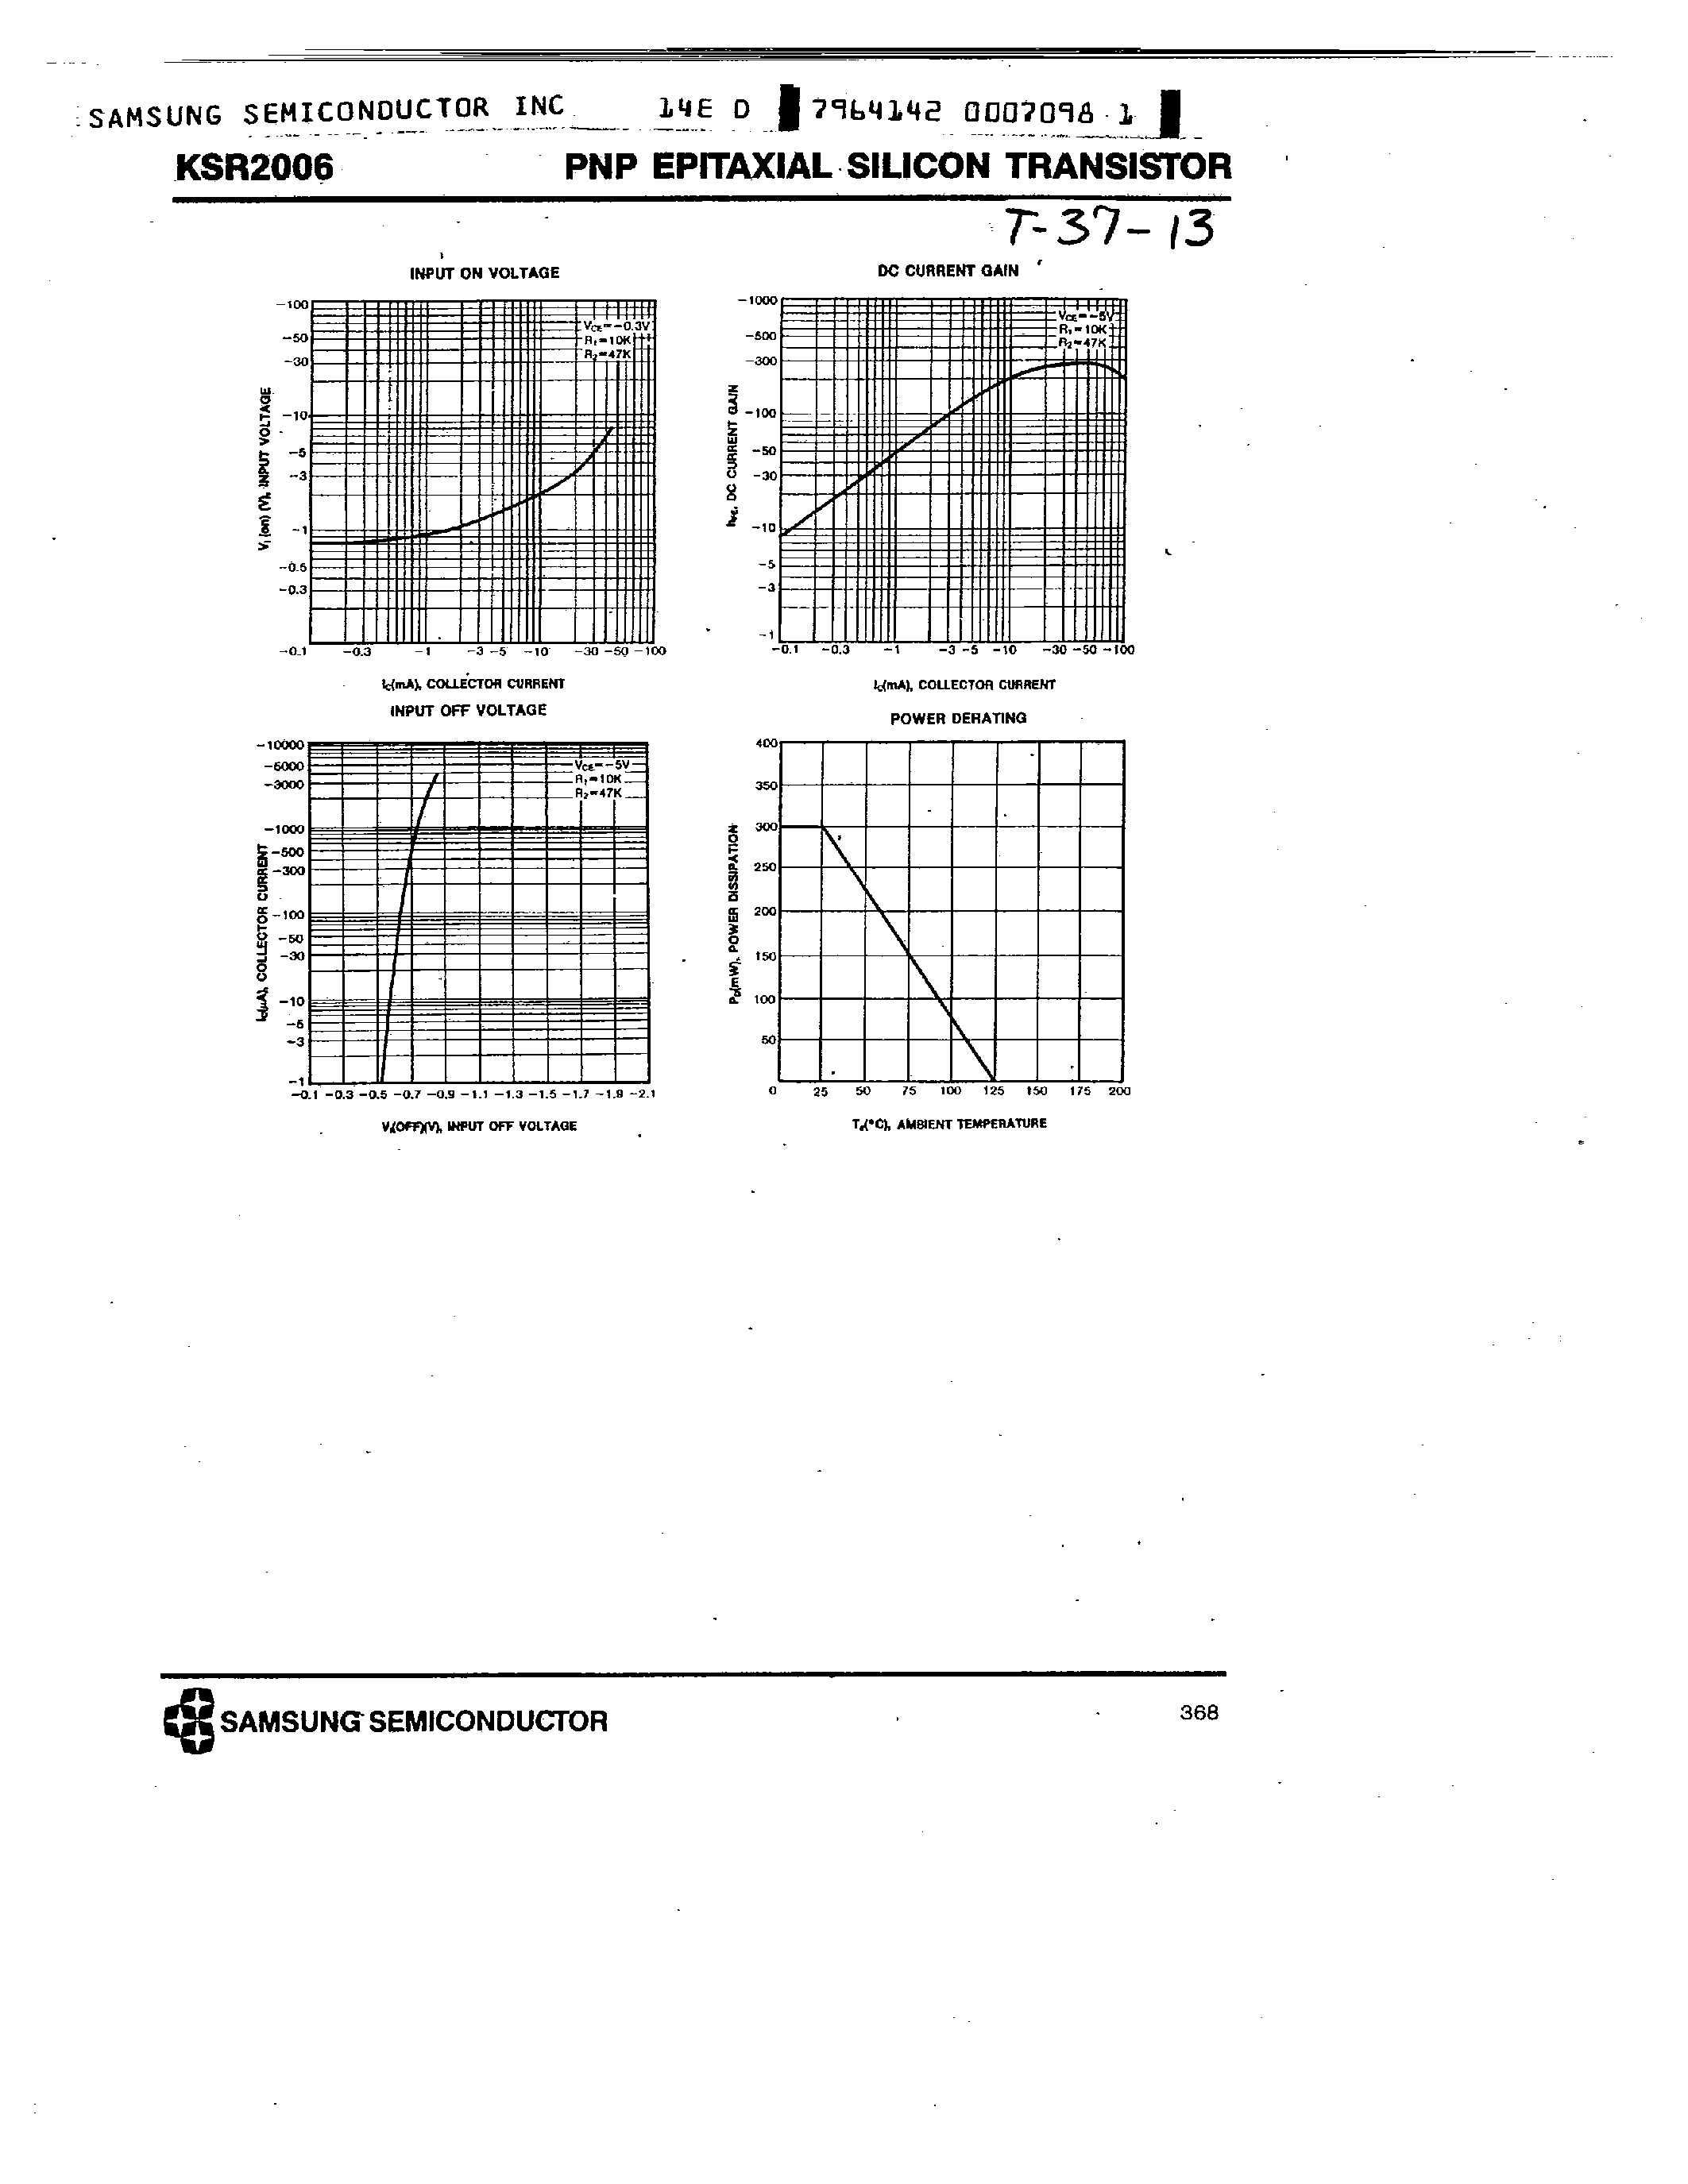 Datasheet KSR2006 - PNP (SWITCHING APPLICATION) page 2